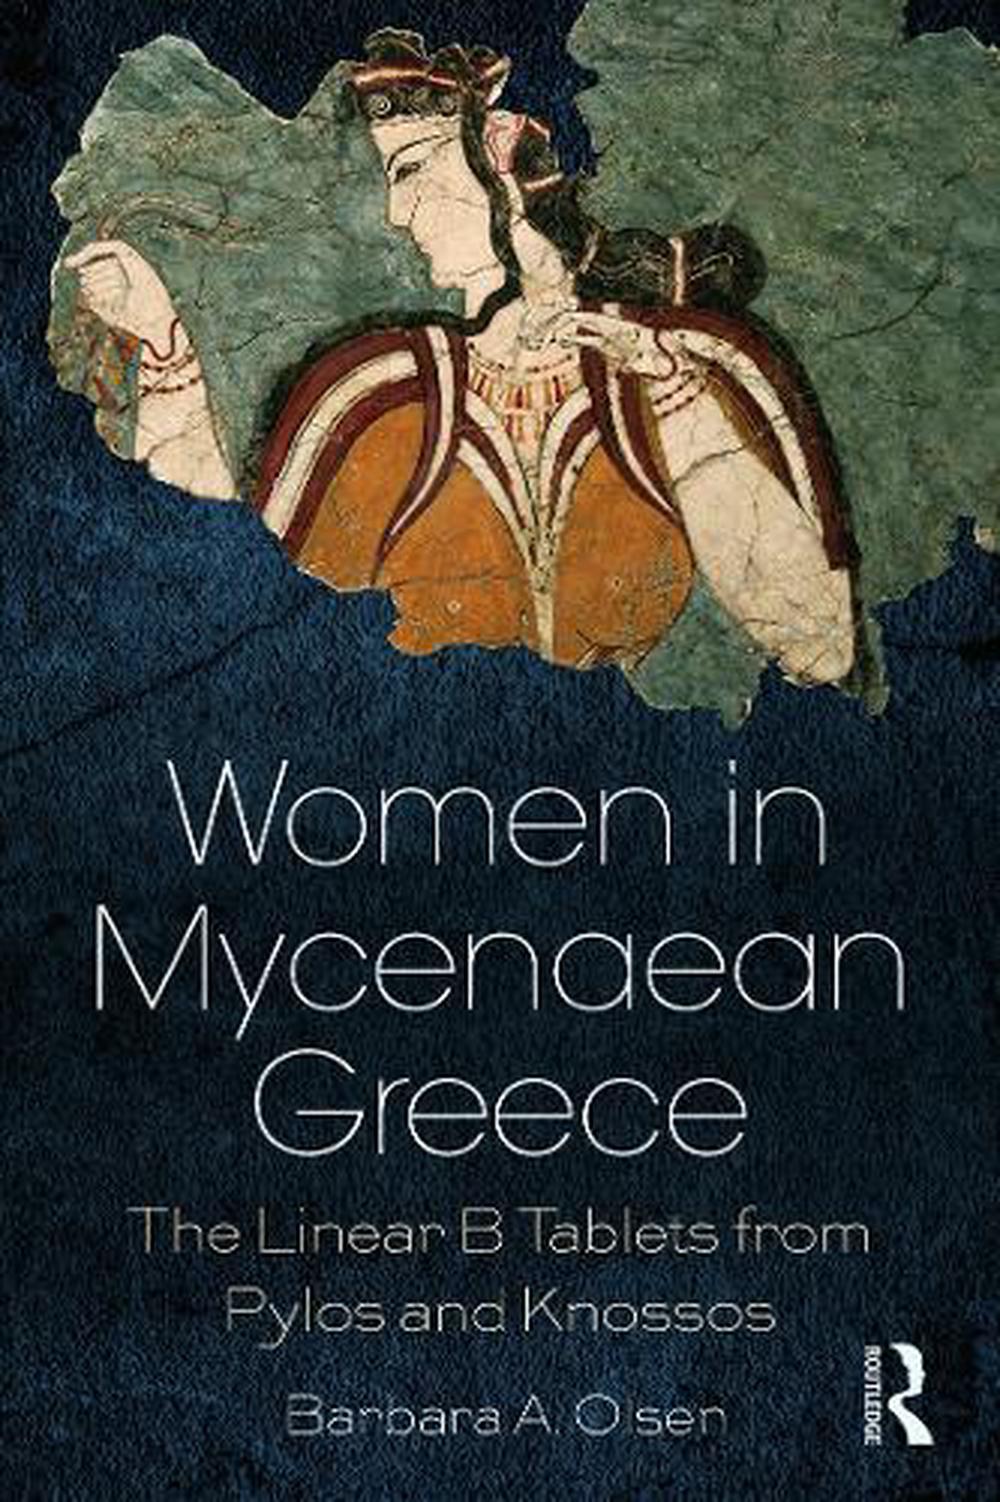 Women in Mycenaean Greece by Barbara A. Olsen